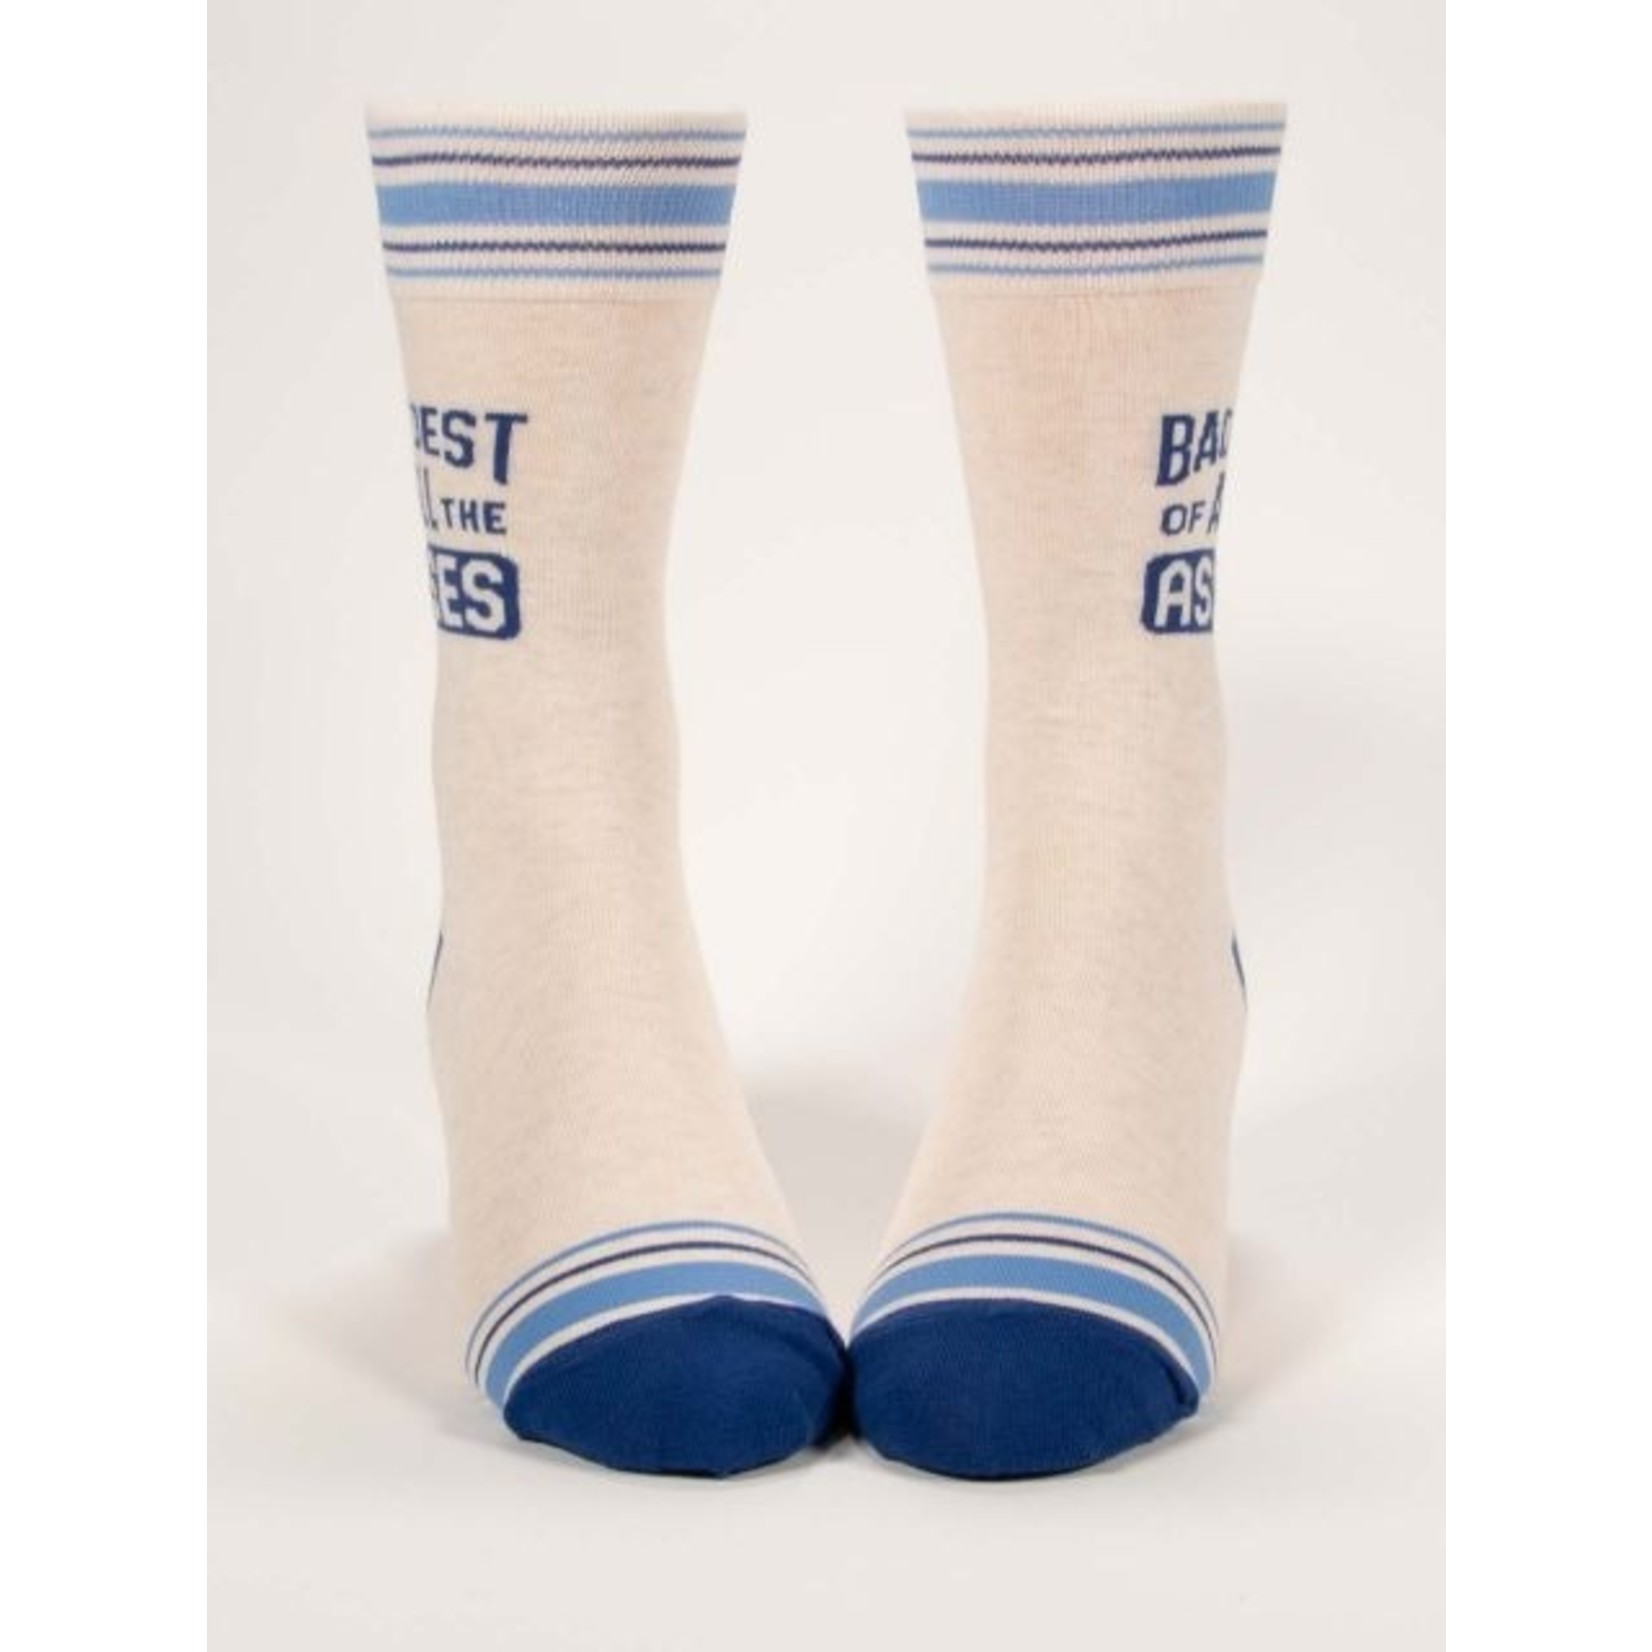 Blue Q Baddest of Asses Men's Crew Socks